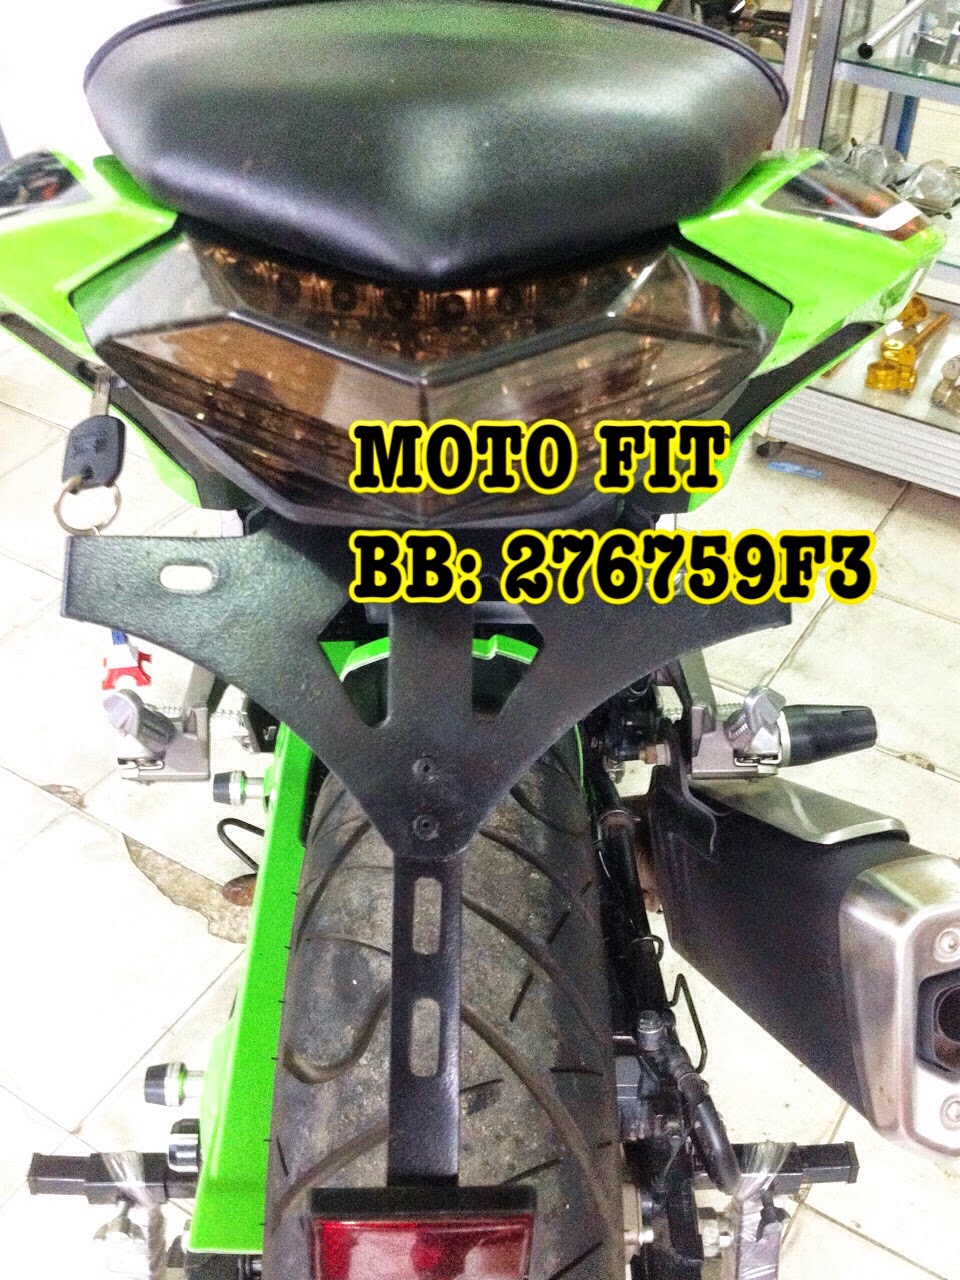 MOTO FIT Modifikasi Kawasaki Ninja 250 Carbu FI Z250 ER6 Z800